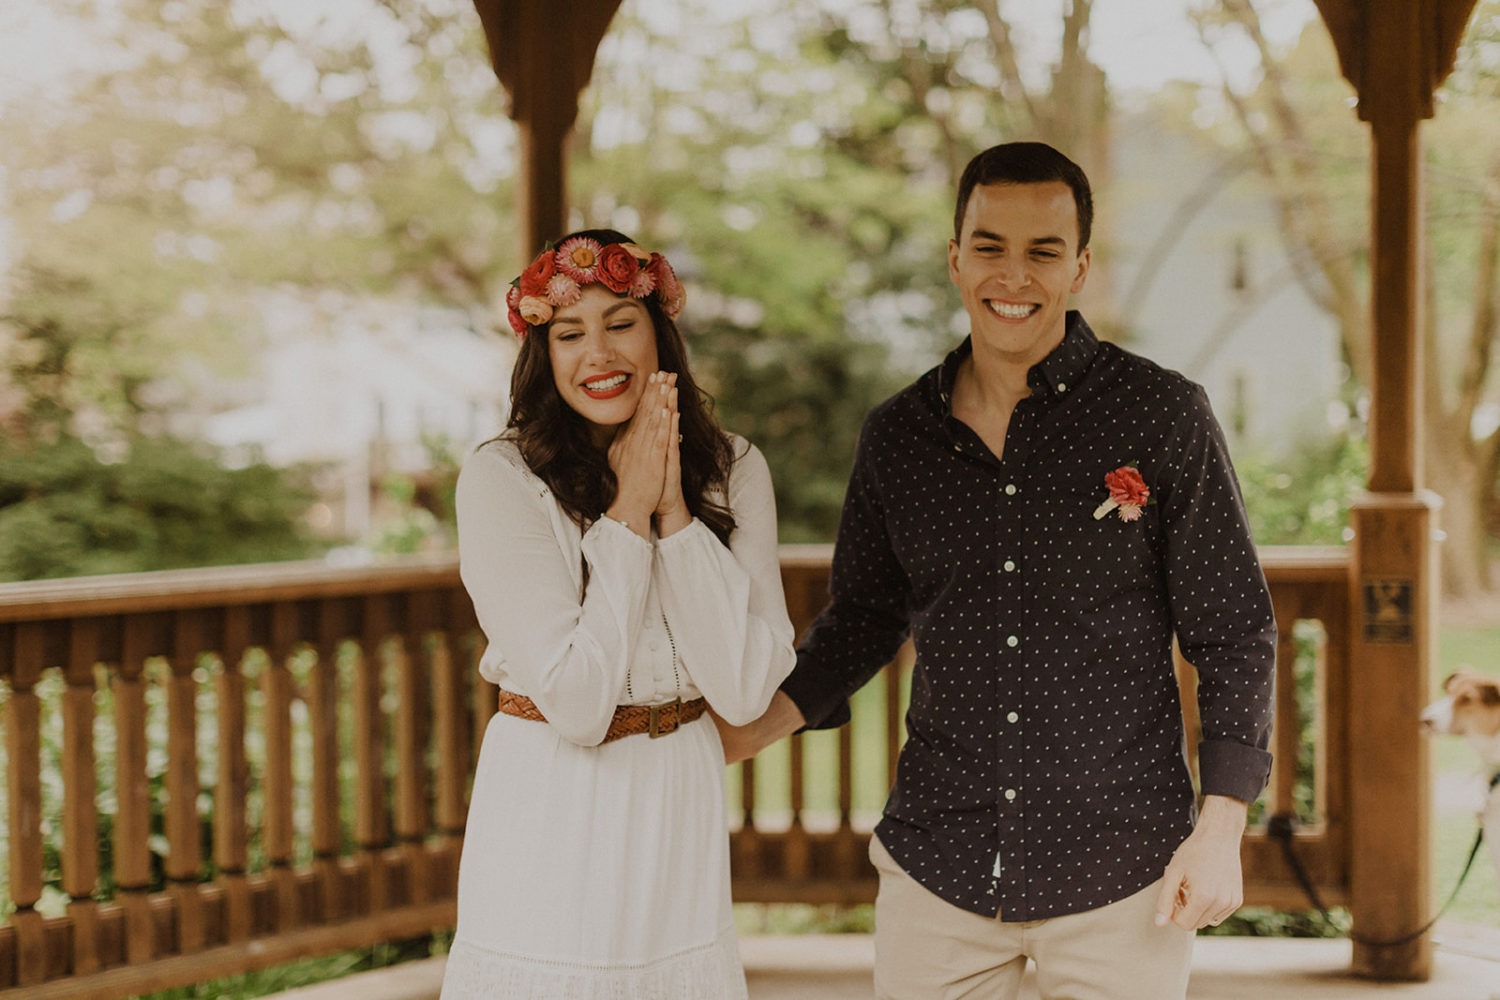 Couple smiles while doing virtual wedding vows